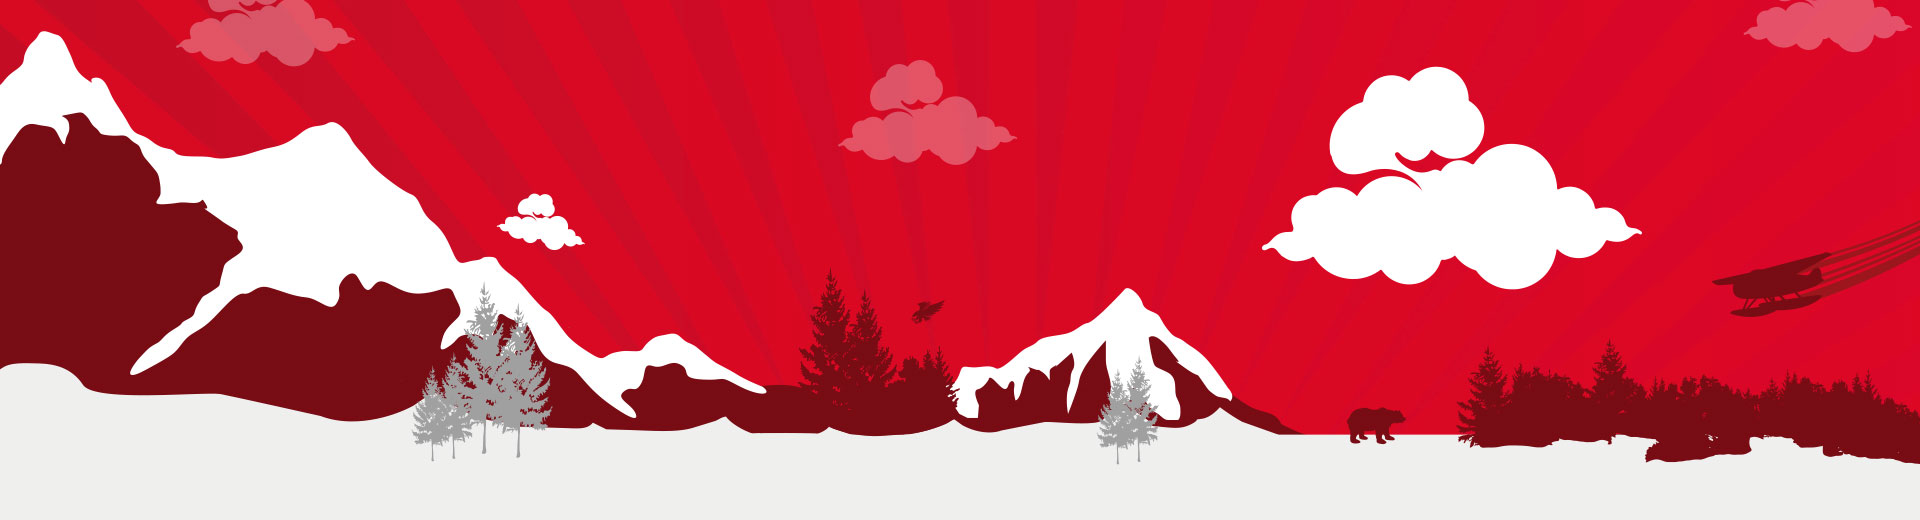 Alaska Mountains Illustration